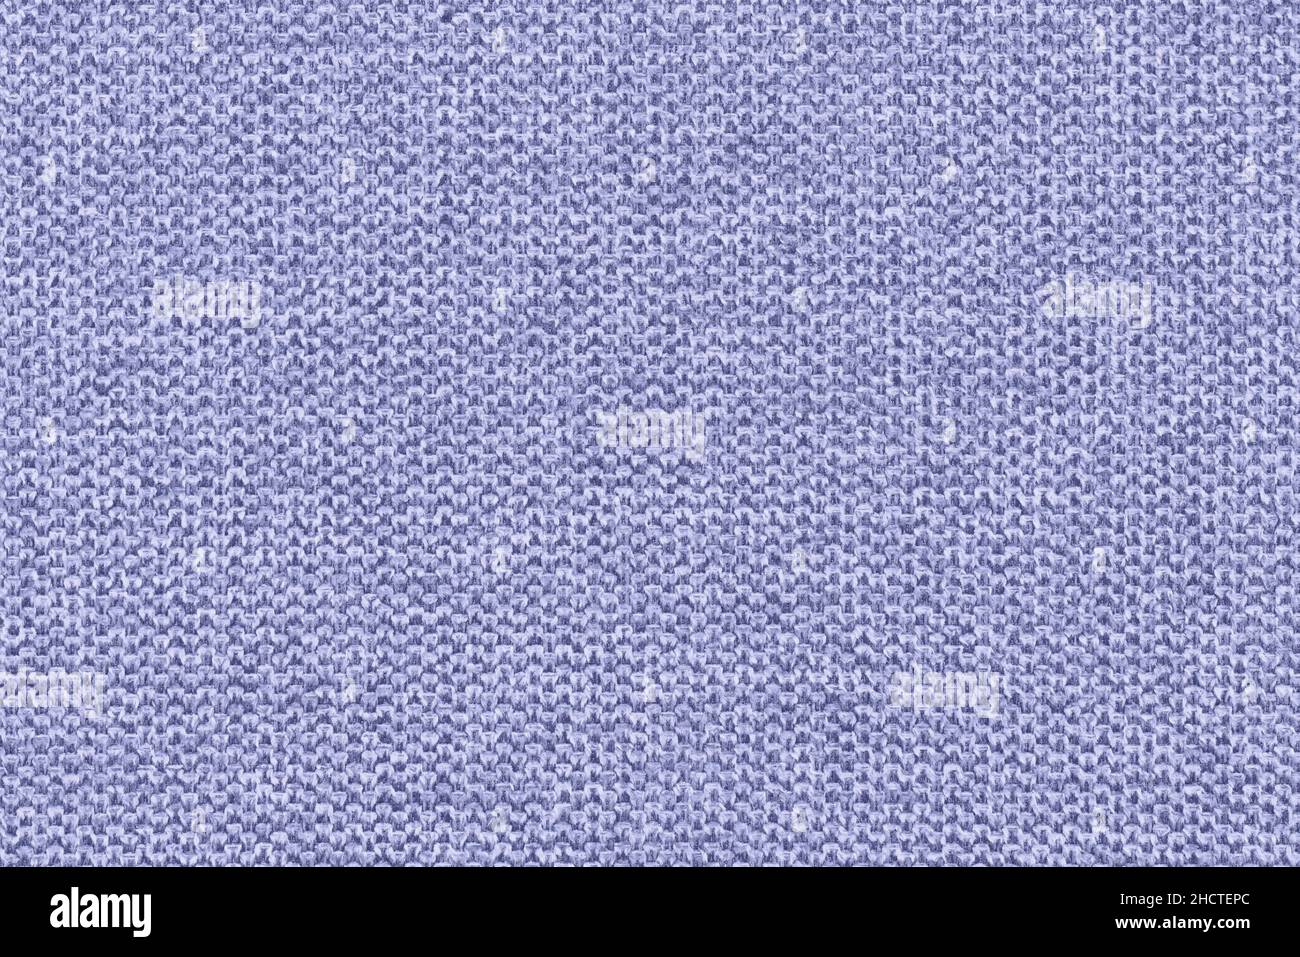 Très Peri bleu pourpre coton tissé canapé coussin tissu texture fond.Photographie haute résolution Banque D'Images